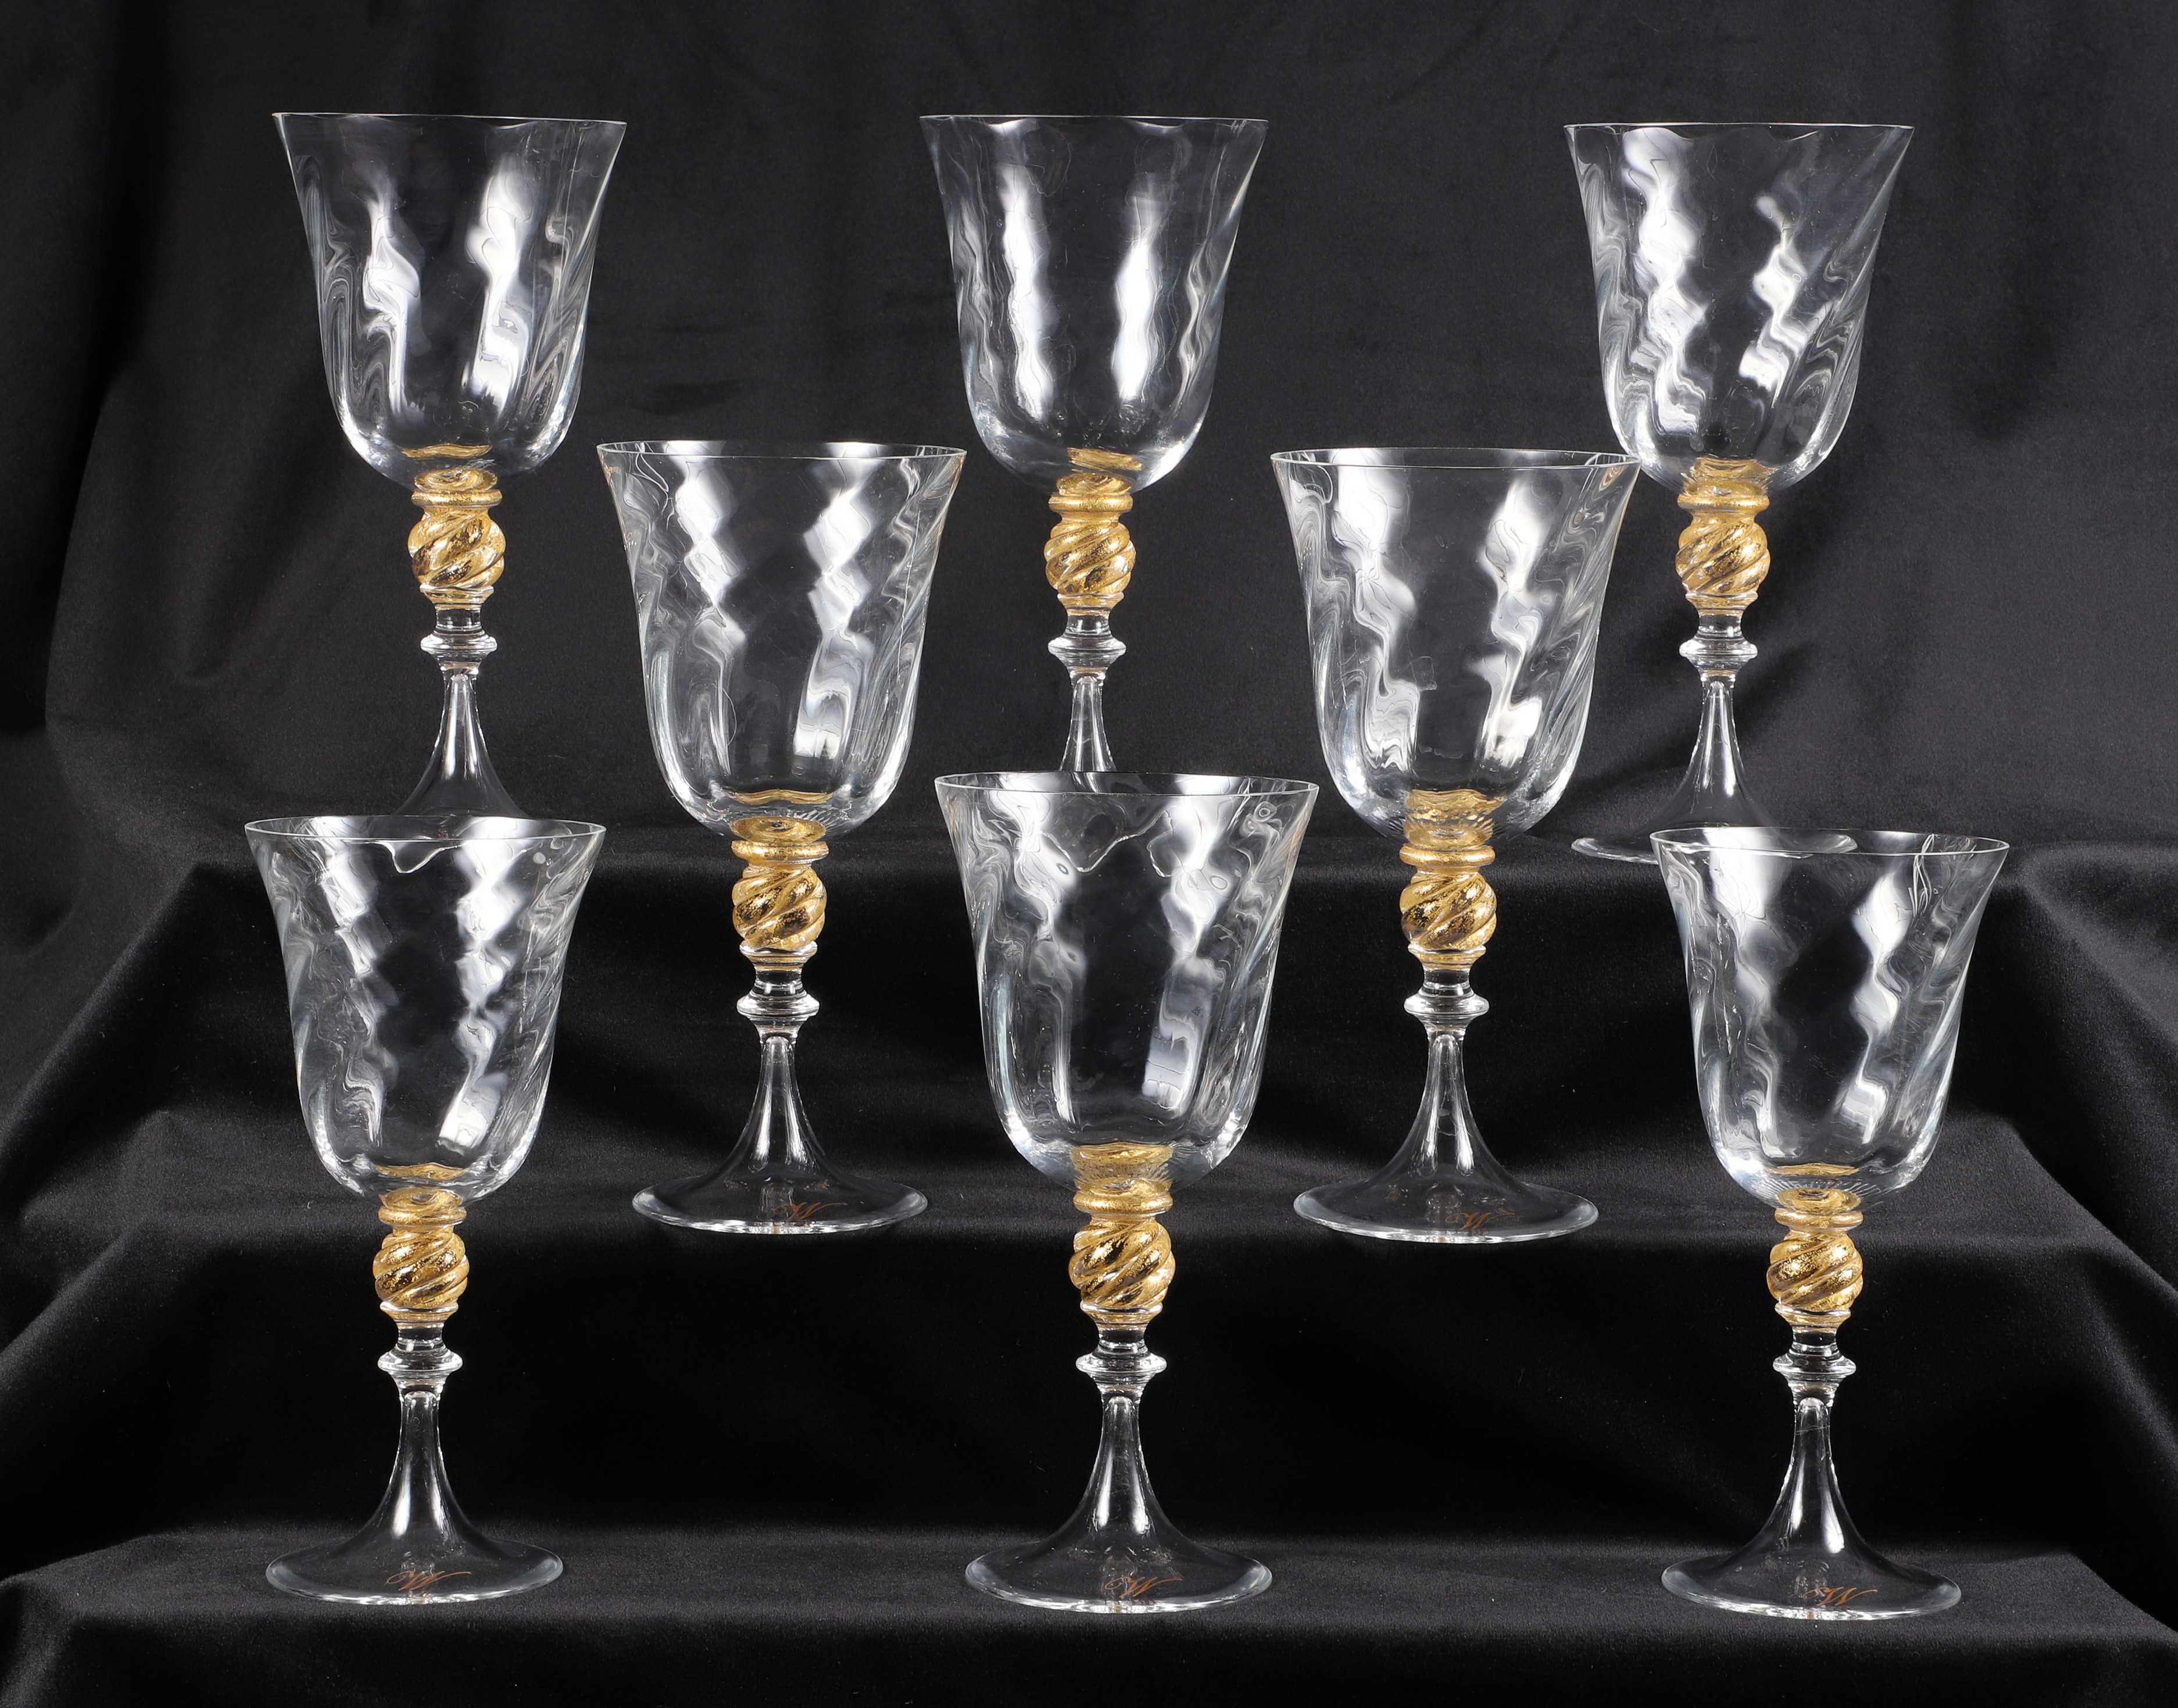  8 Murano glass wine goblets  2e10a5